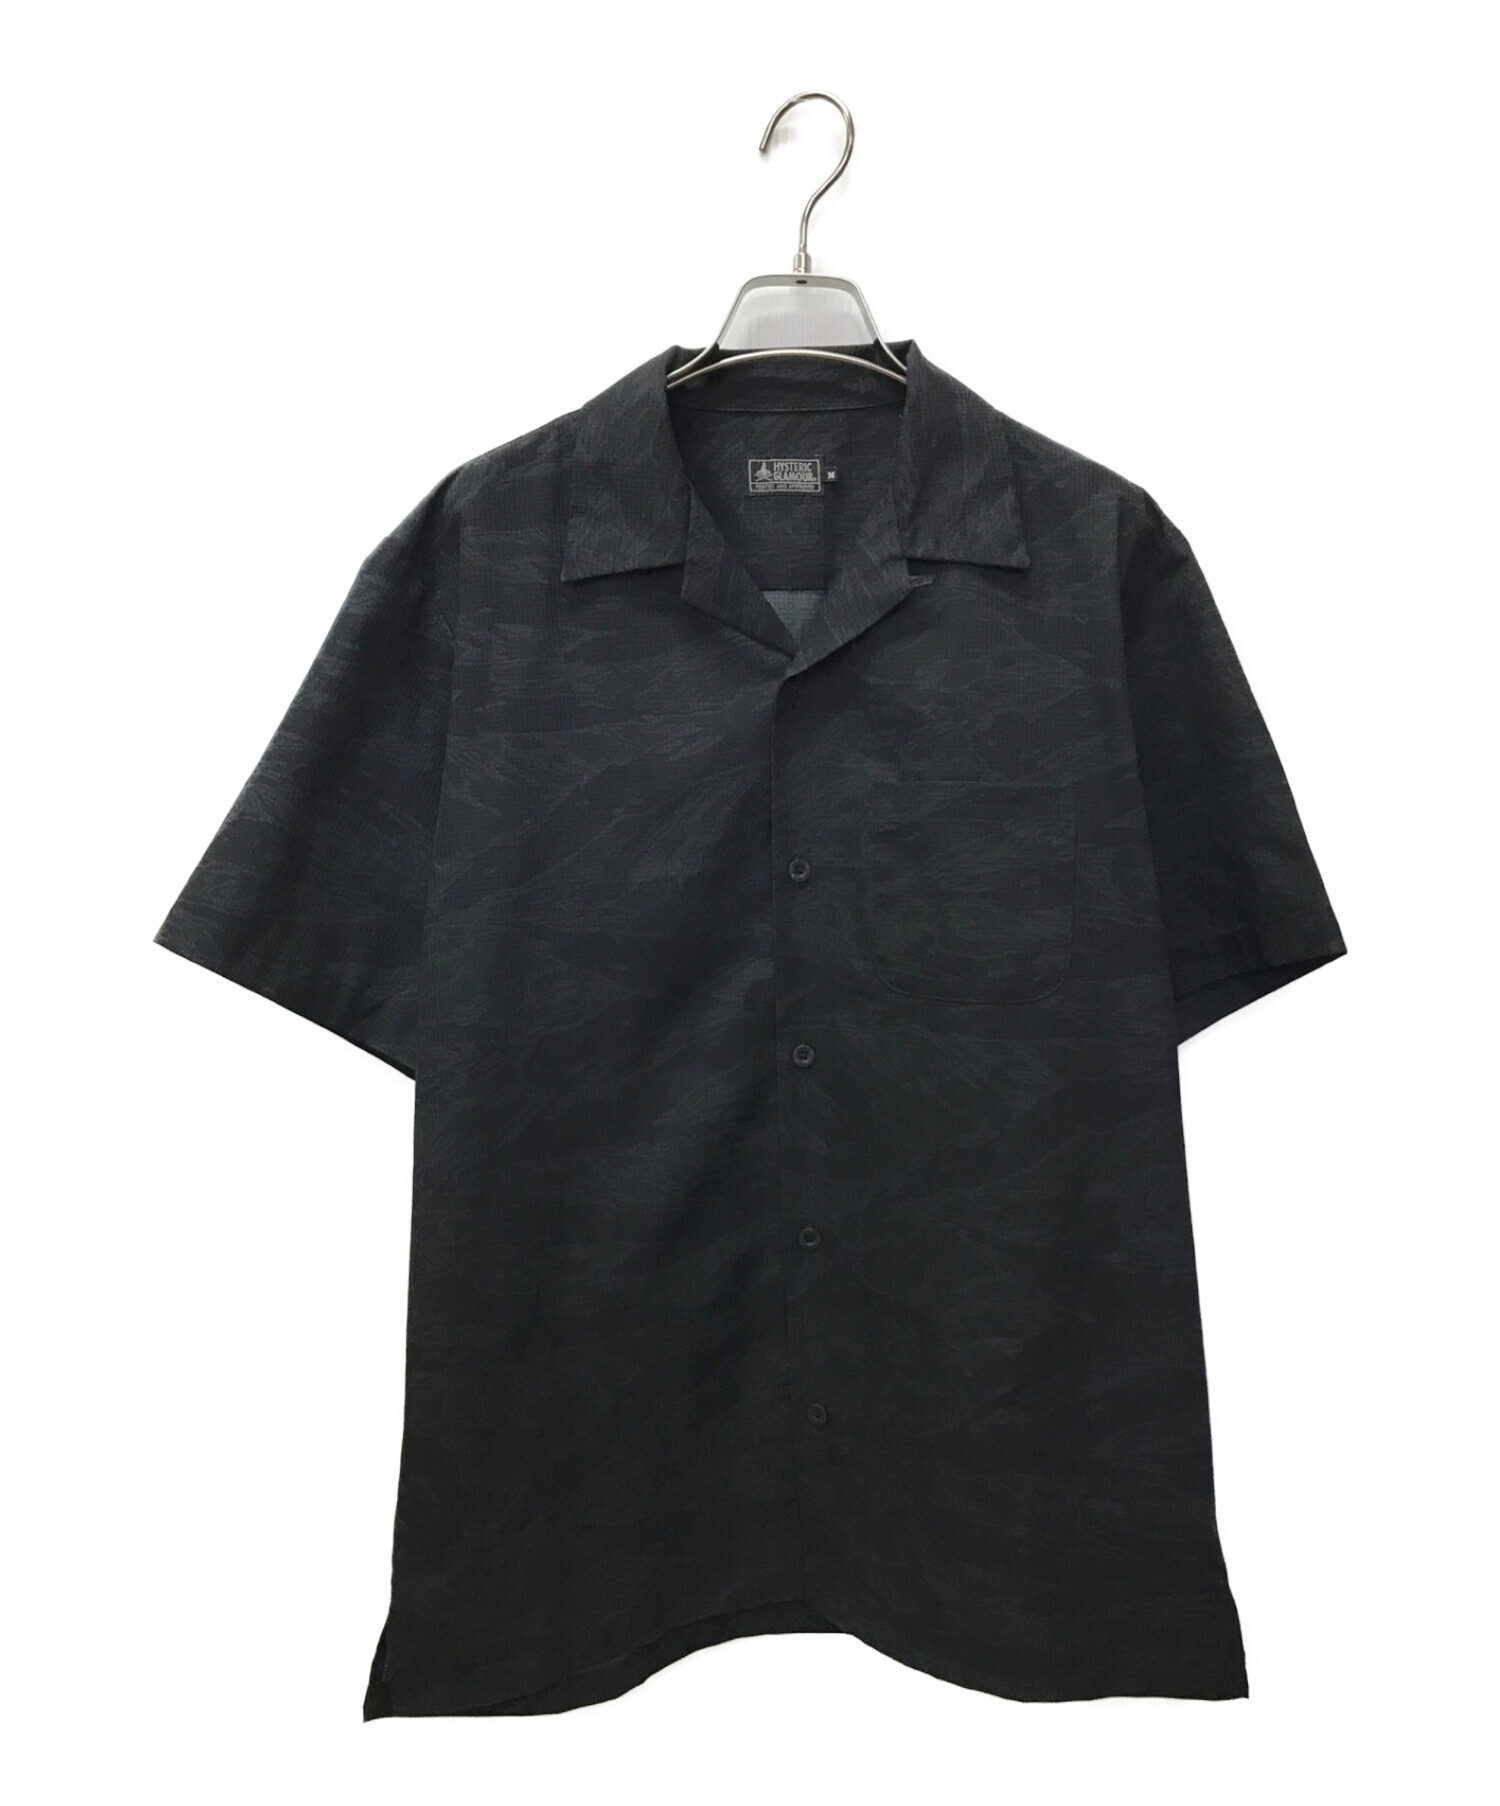 Hysteric Glamour (ヒステリックグラマー) TIGER STRIPE総柄 半袖オープンカラーシャツ ブラック サイズ:M